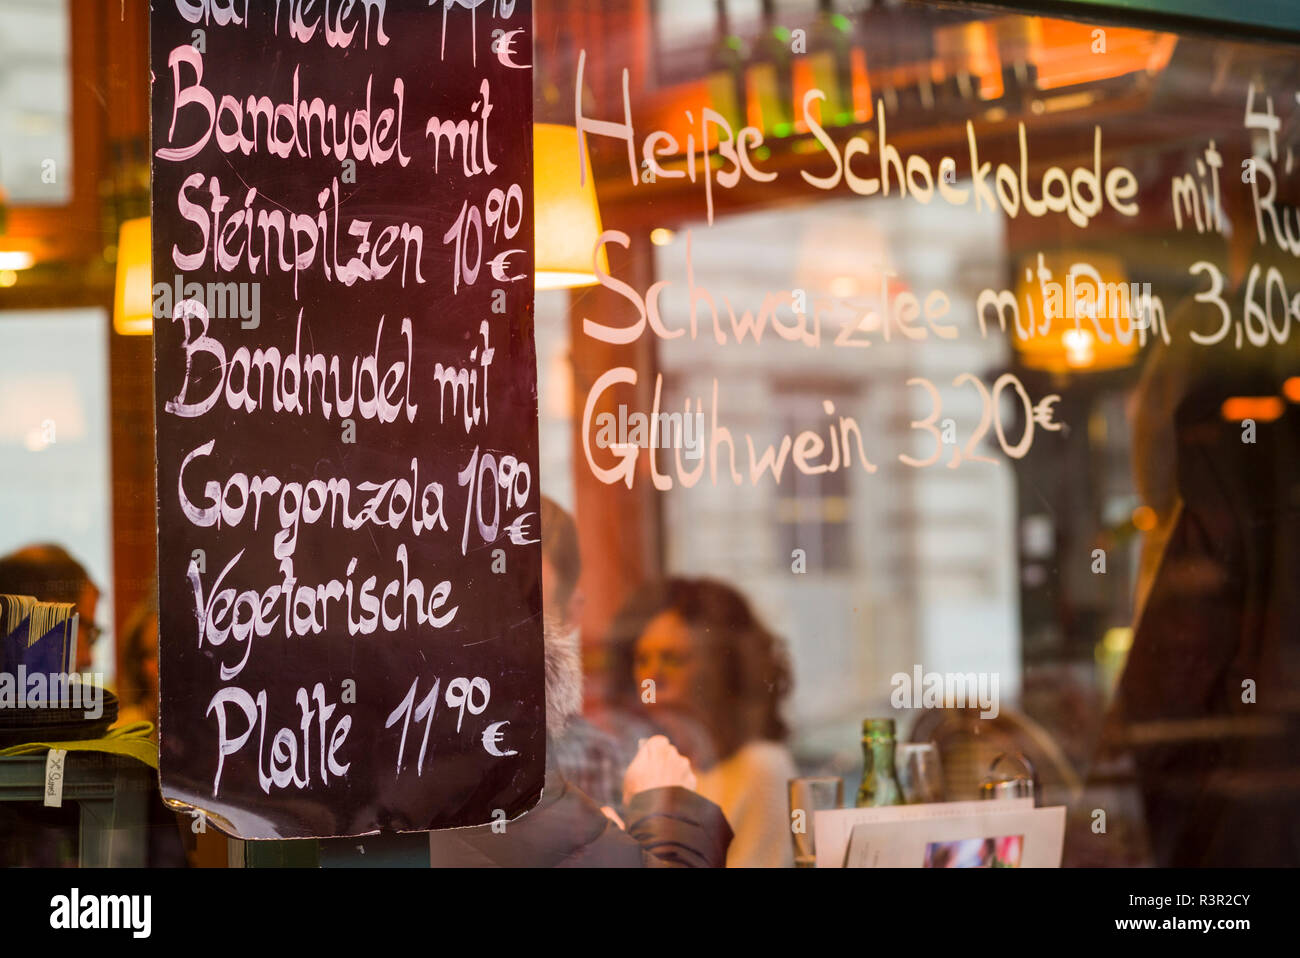 Österreich, Wien. Naschmarkt, Essen im Freien Markt, Fenster Cafe  Stockfotografie - Alamy